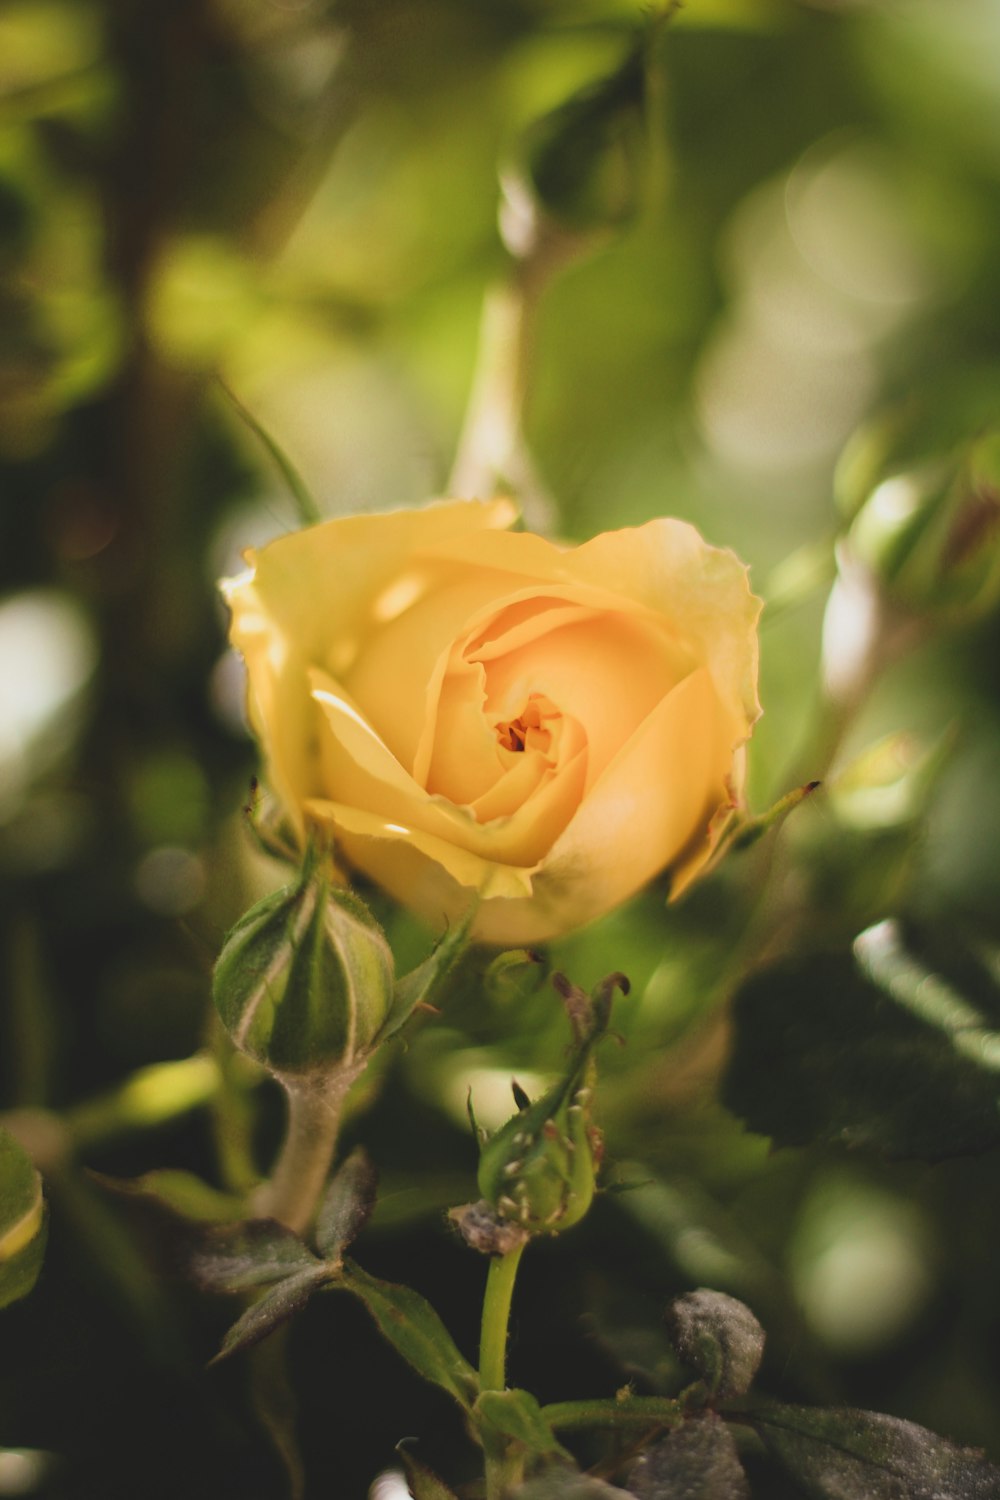 rosa amarilla en flor durante el día